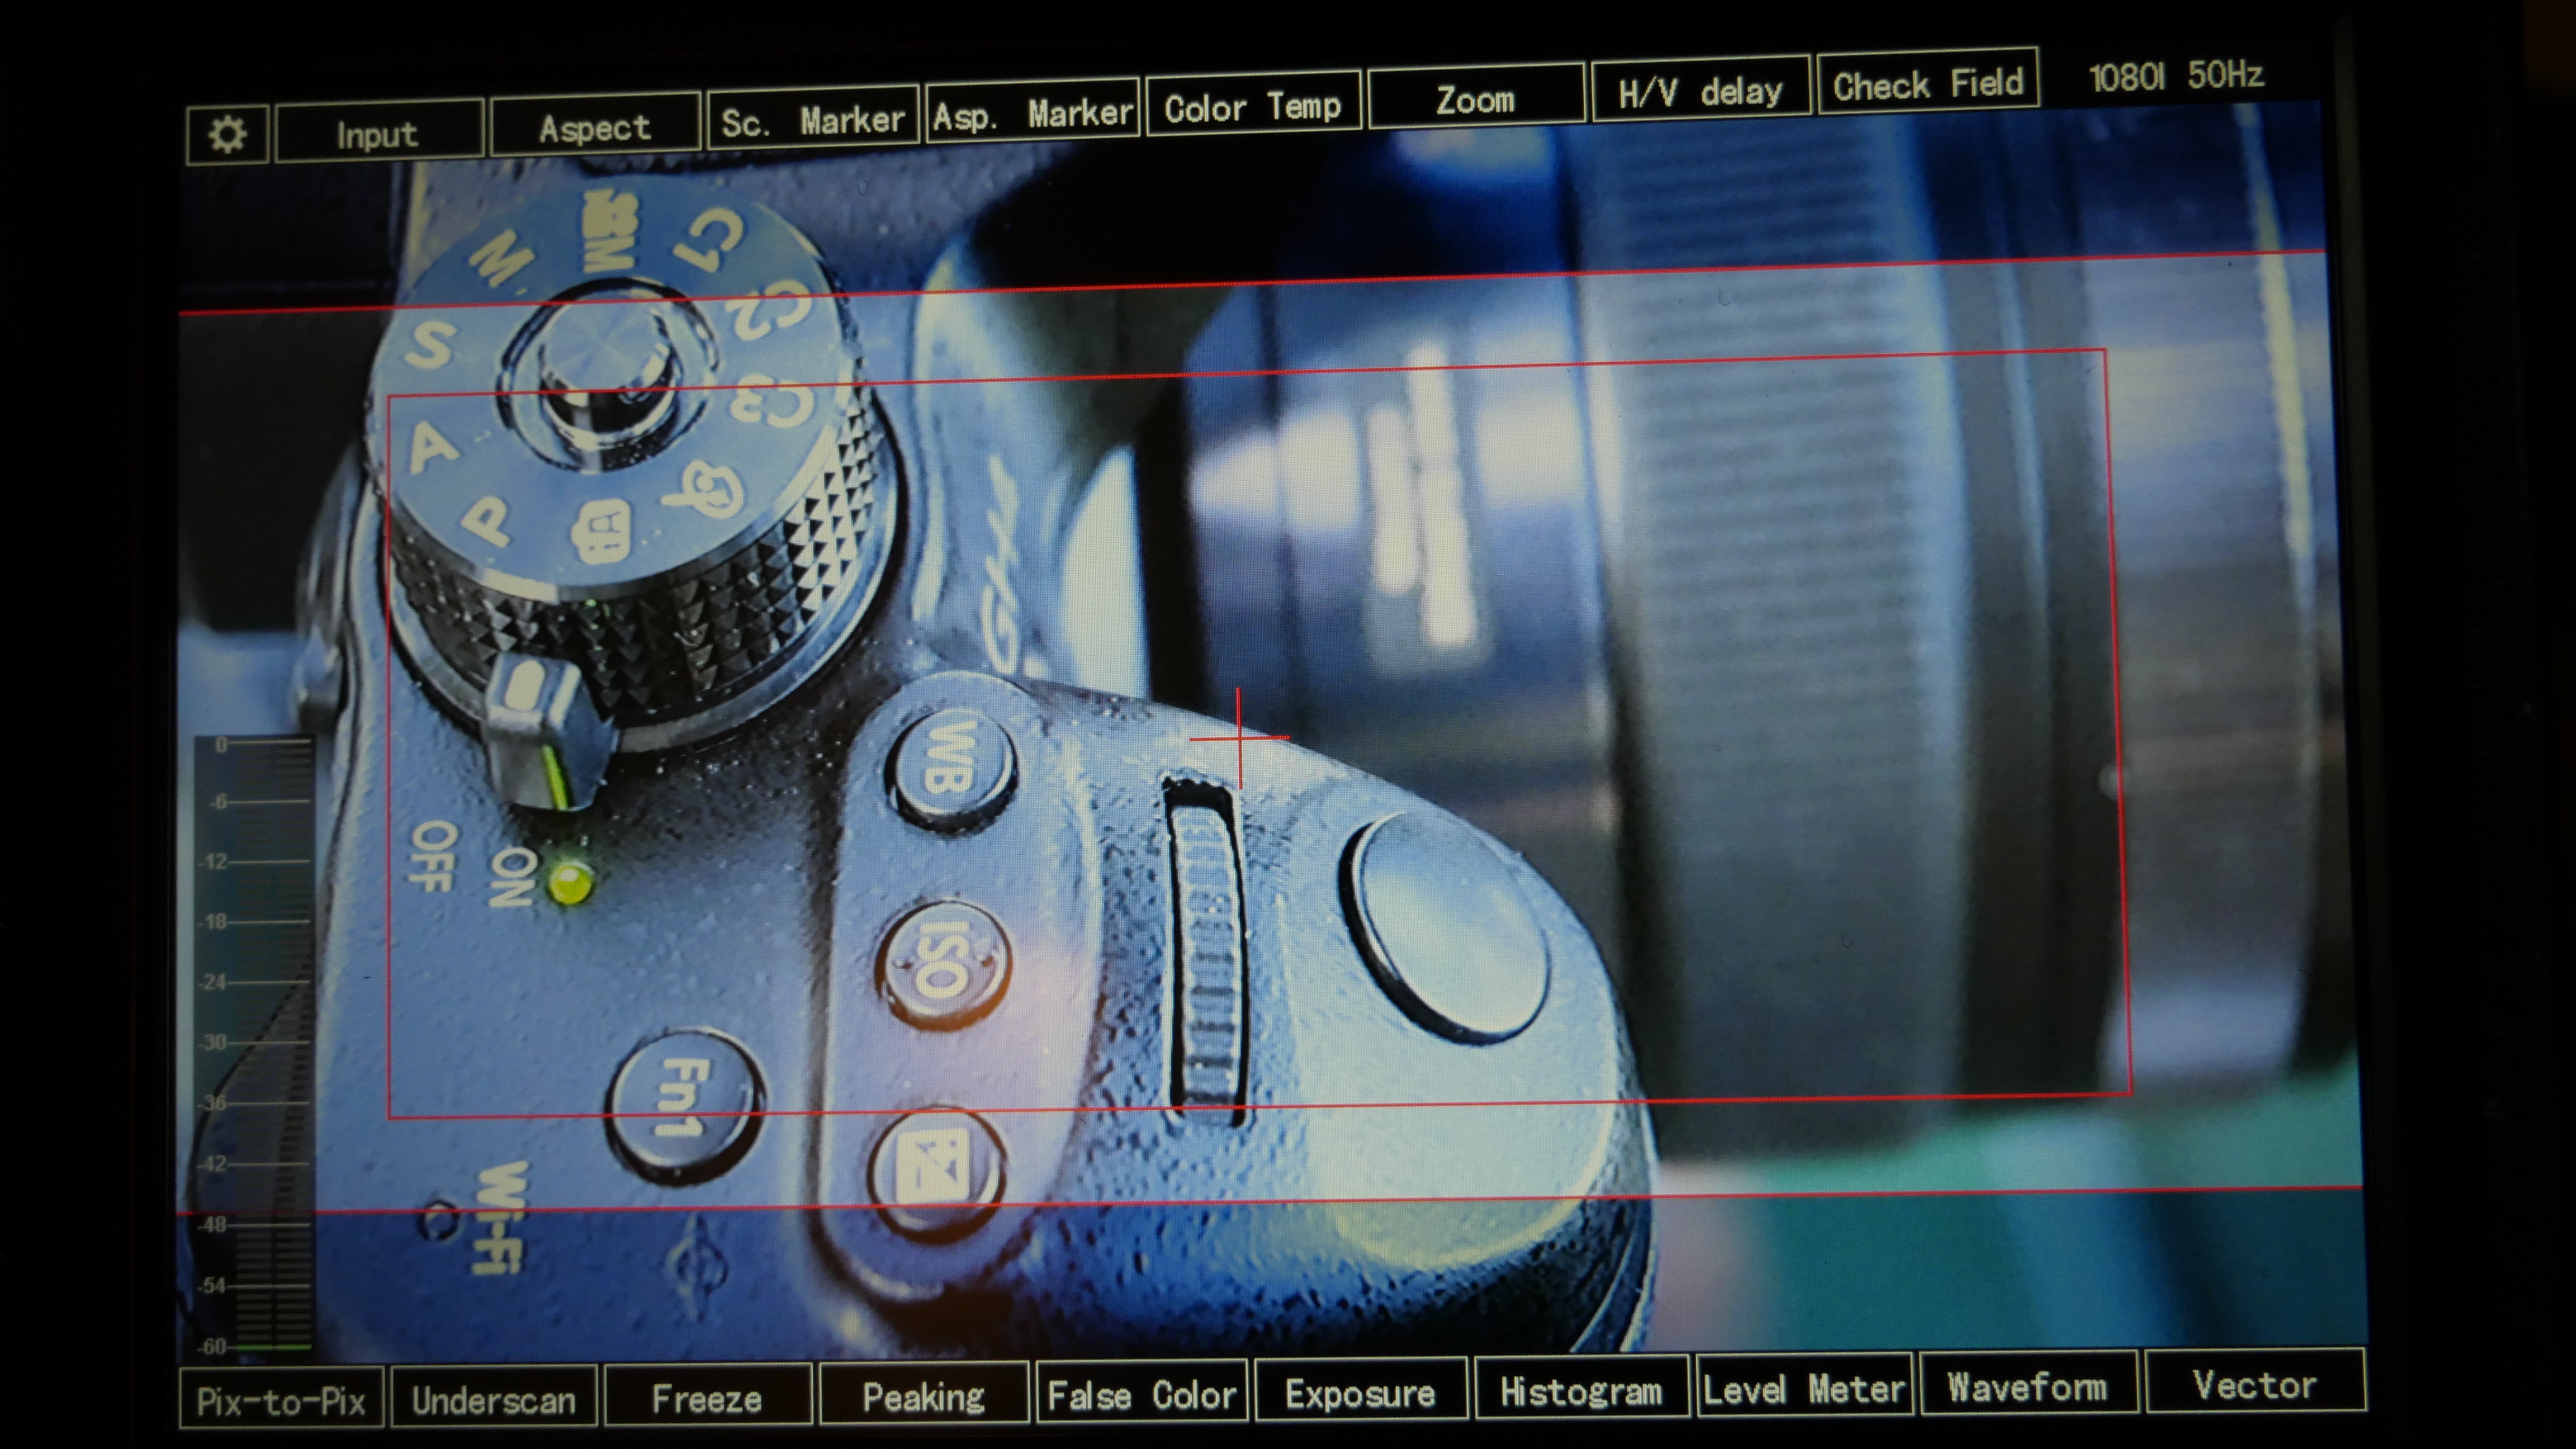 Afficher des barres scopes à l'écran lors d'un tournage.